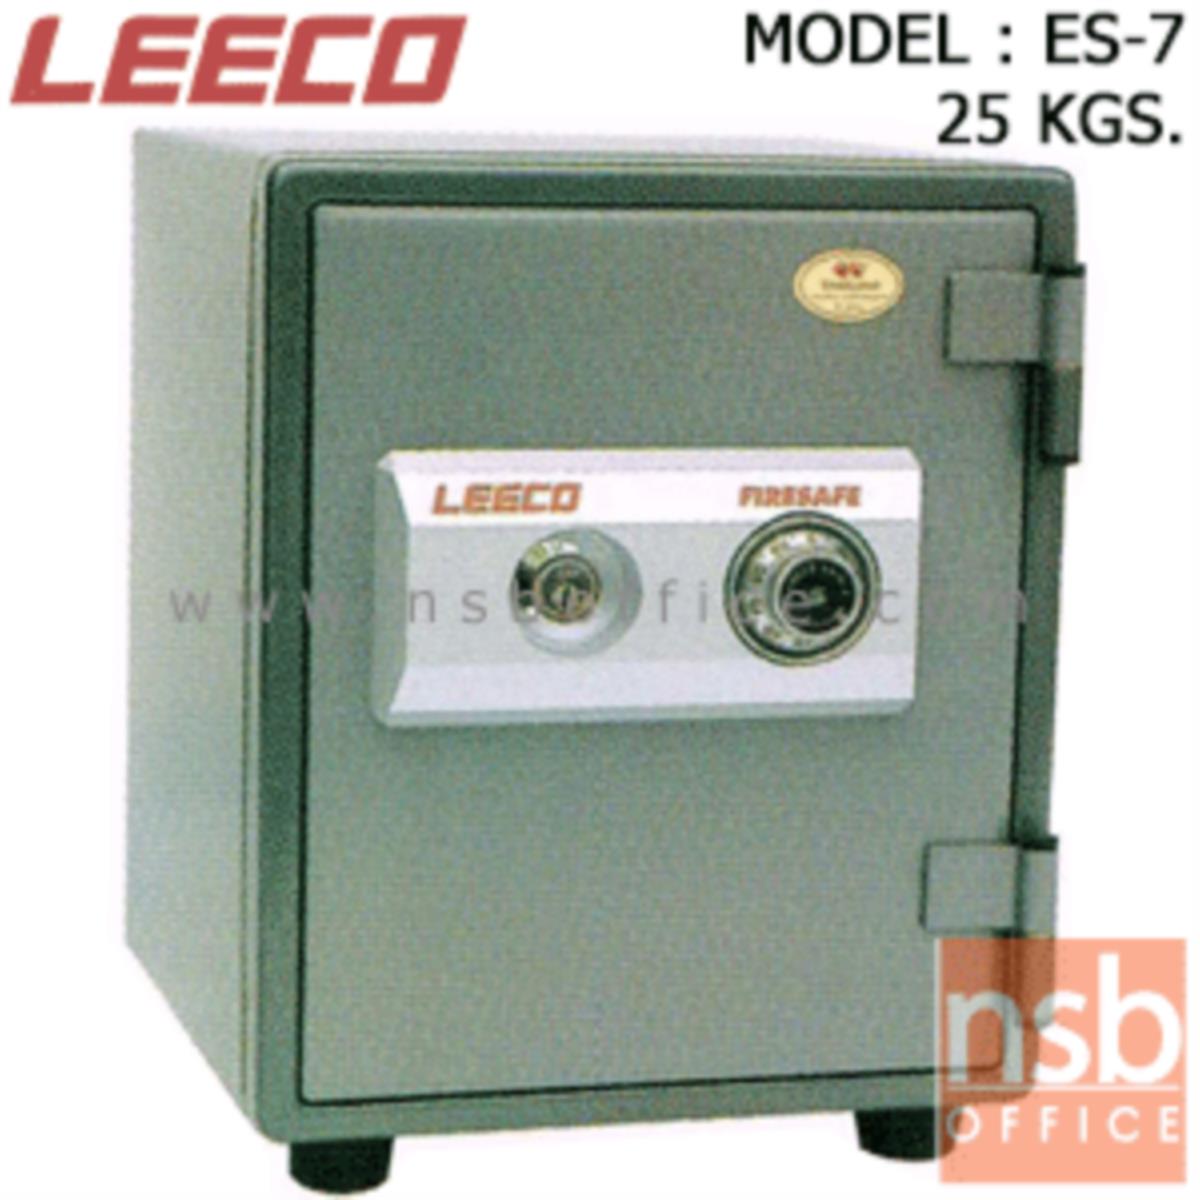 ตู้เซฟนิรภัย 25 กก. ลีโก้ รุ่น LEECO-ES-7 มี 1 กุญแจ 1 รหัส (เปลี่ยนรหัสไม่ได้)   